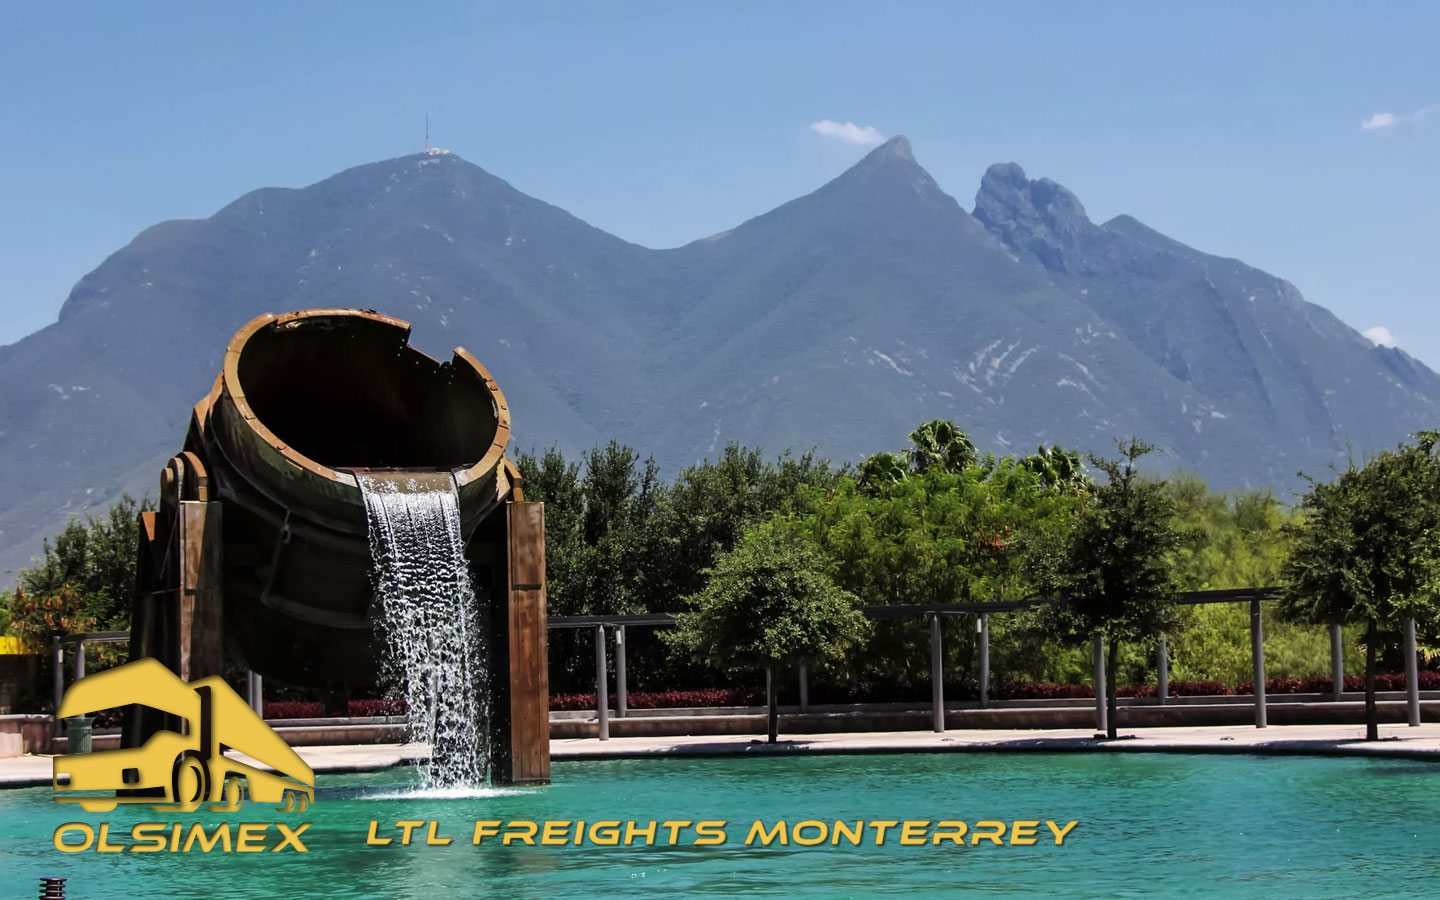 LTL Freights Monterrey